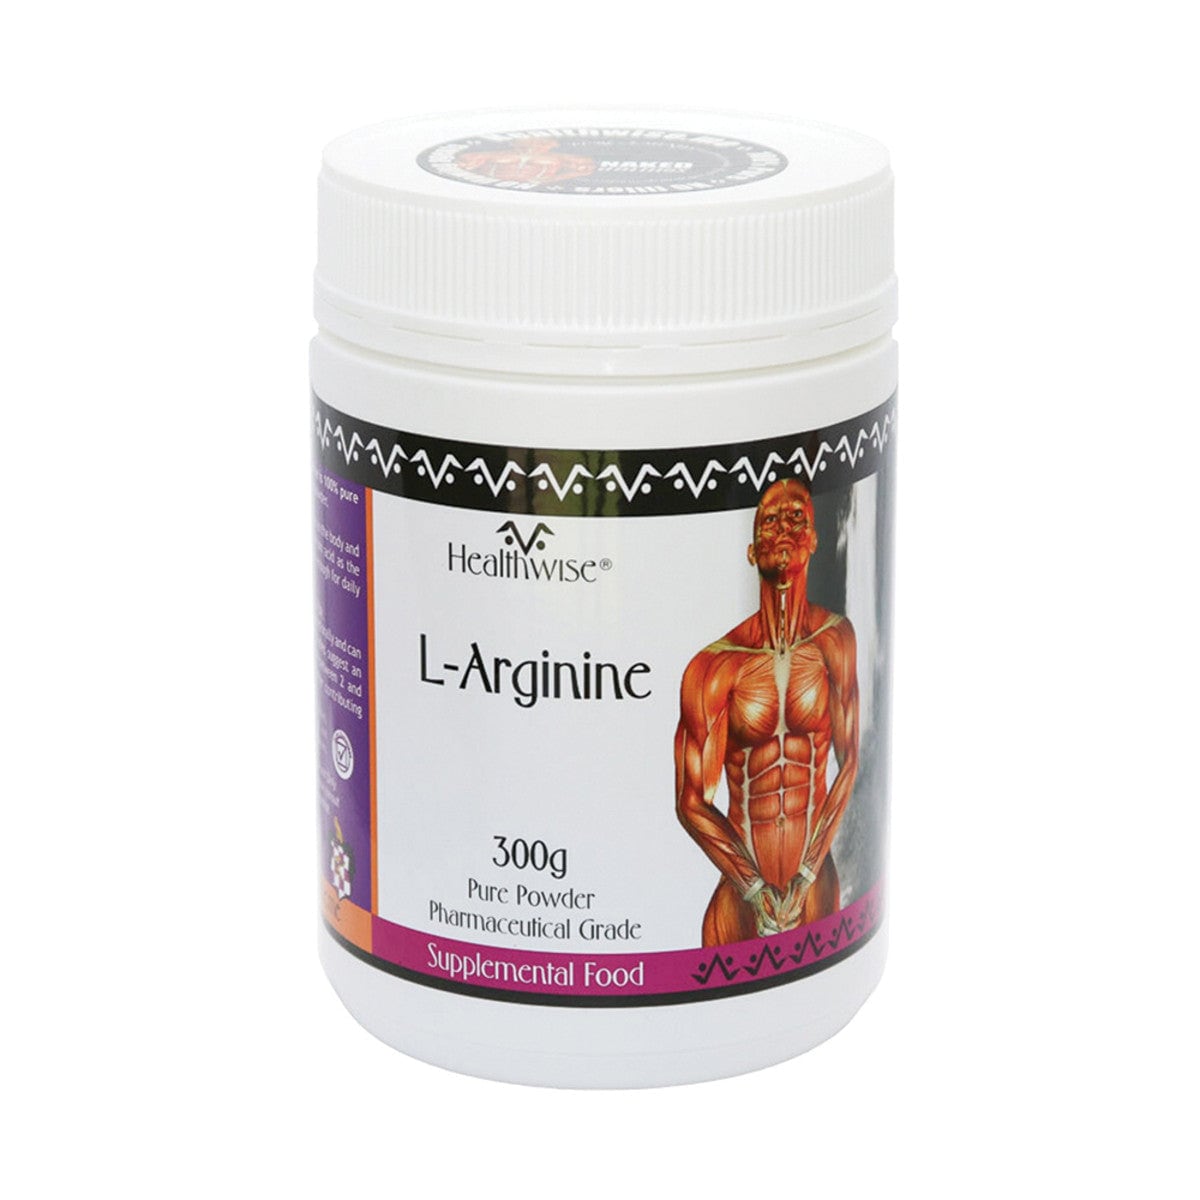 Healthwise L-Arginine Powder 300g Australia